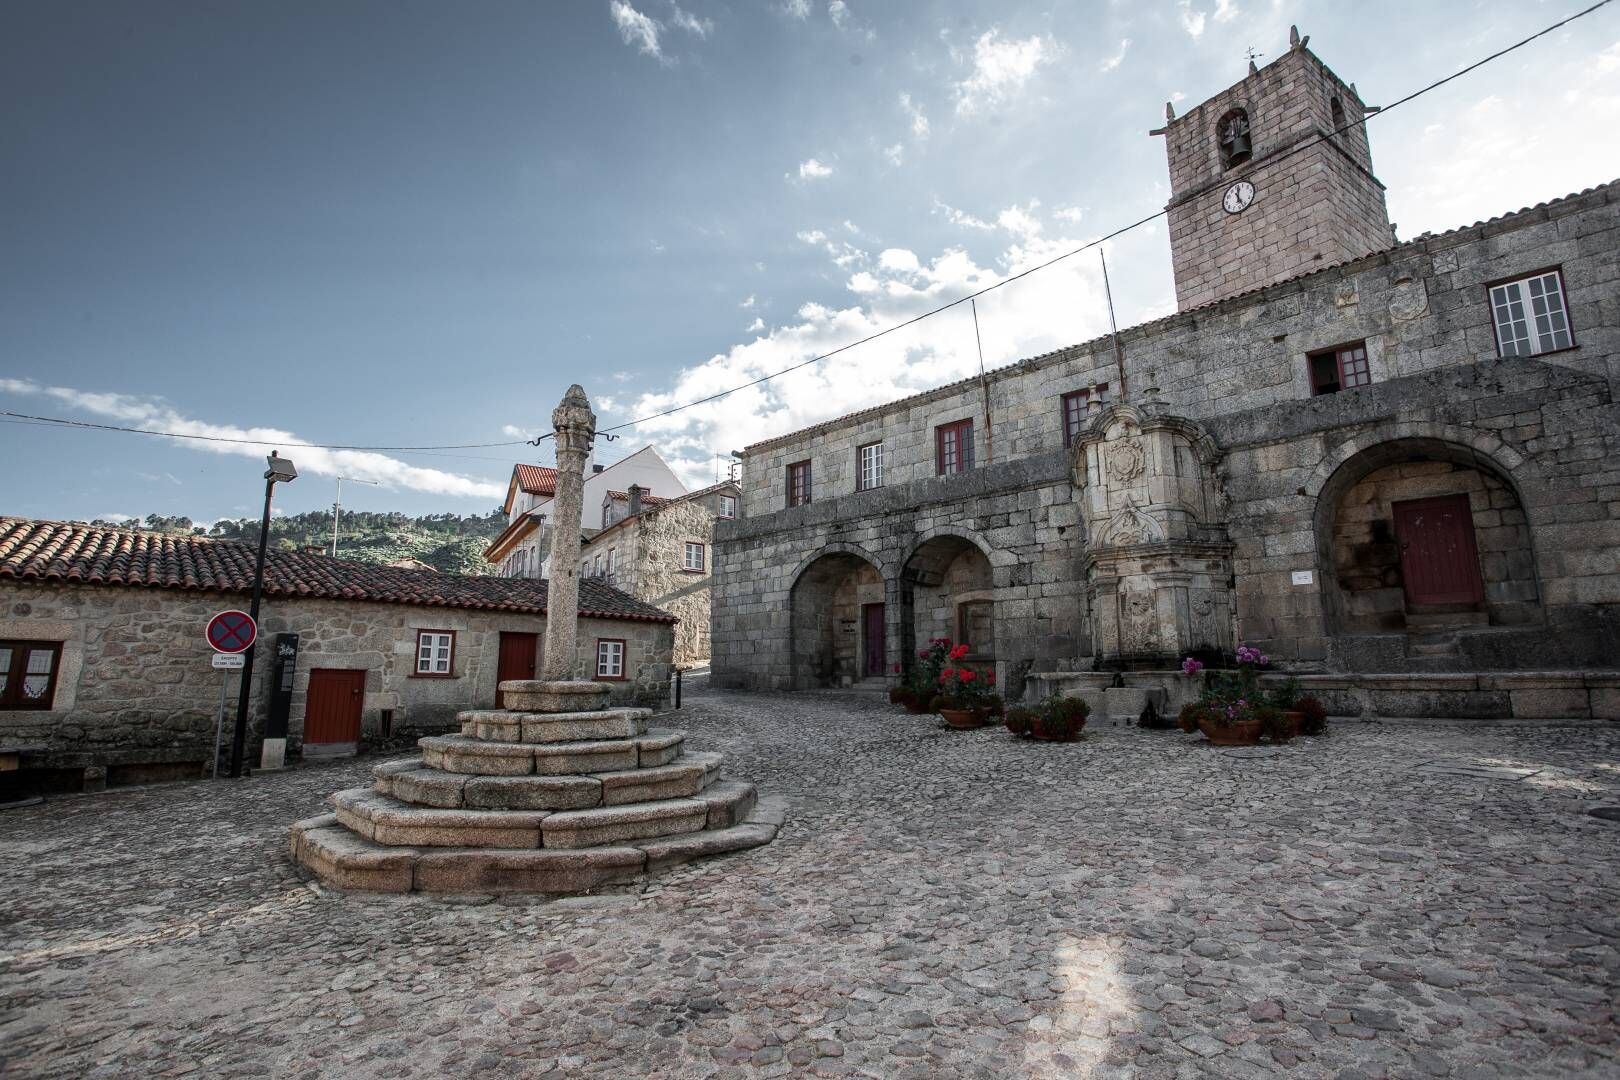 La primera mención histórica registrada de Castelo Novo se remonta a alrededor del año 1202 d.C., lo que demuestra la rica historia de esta localidad.



